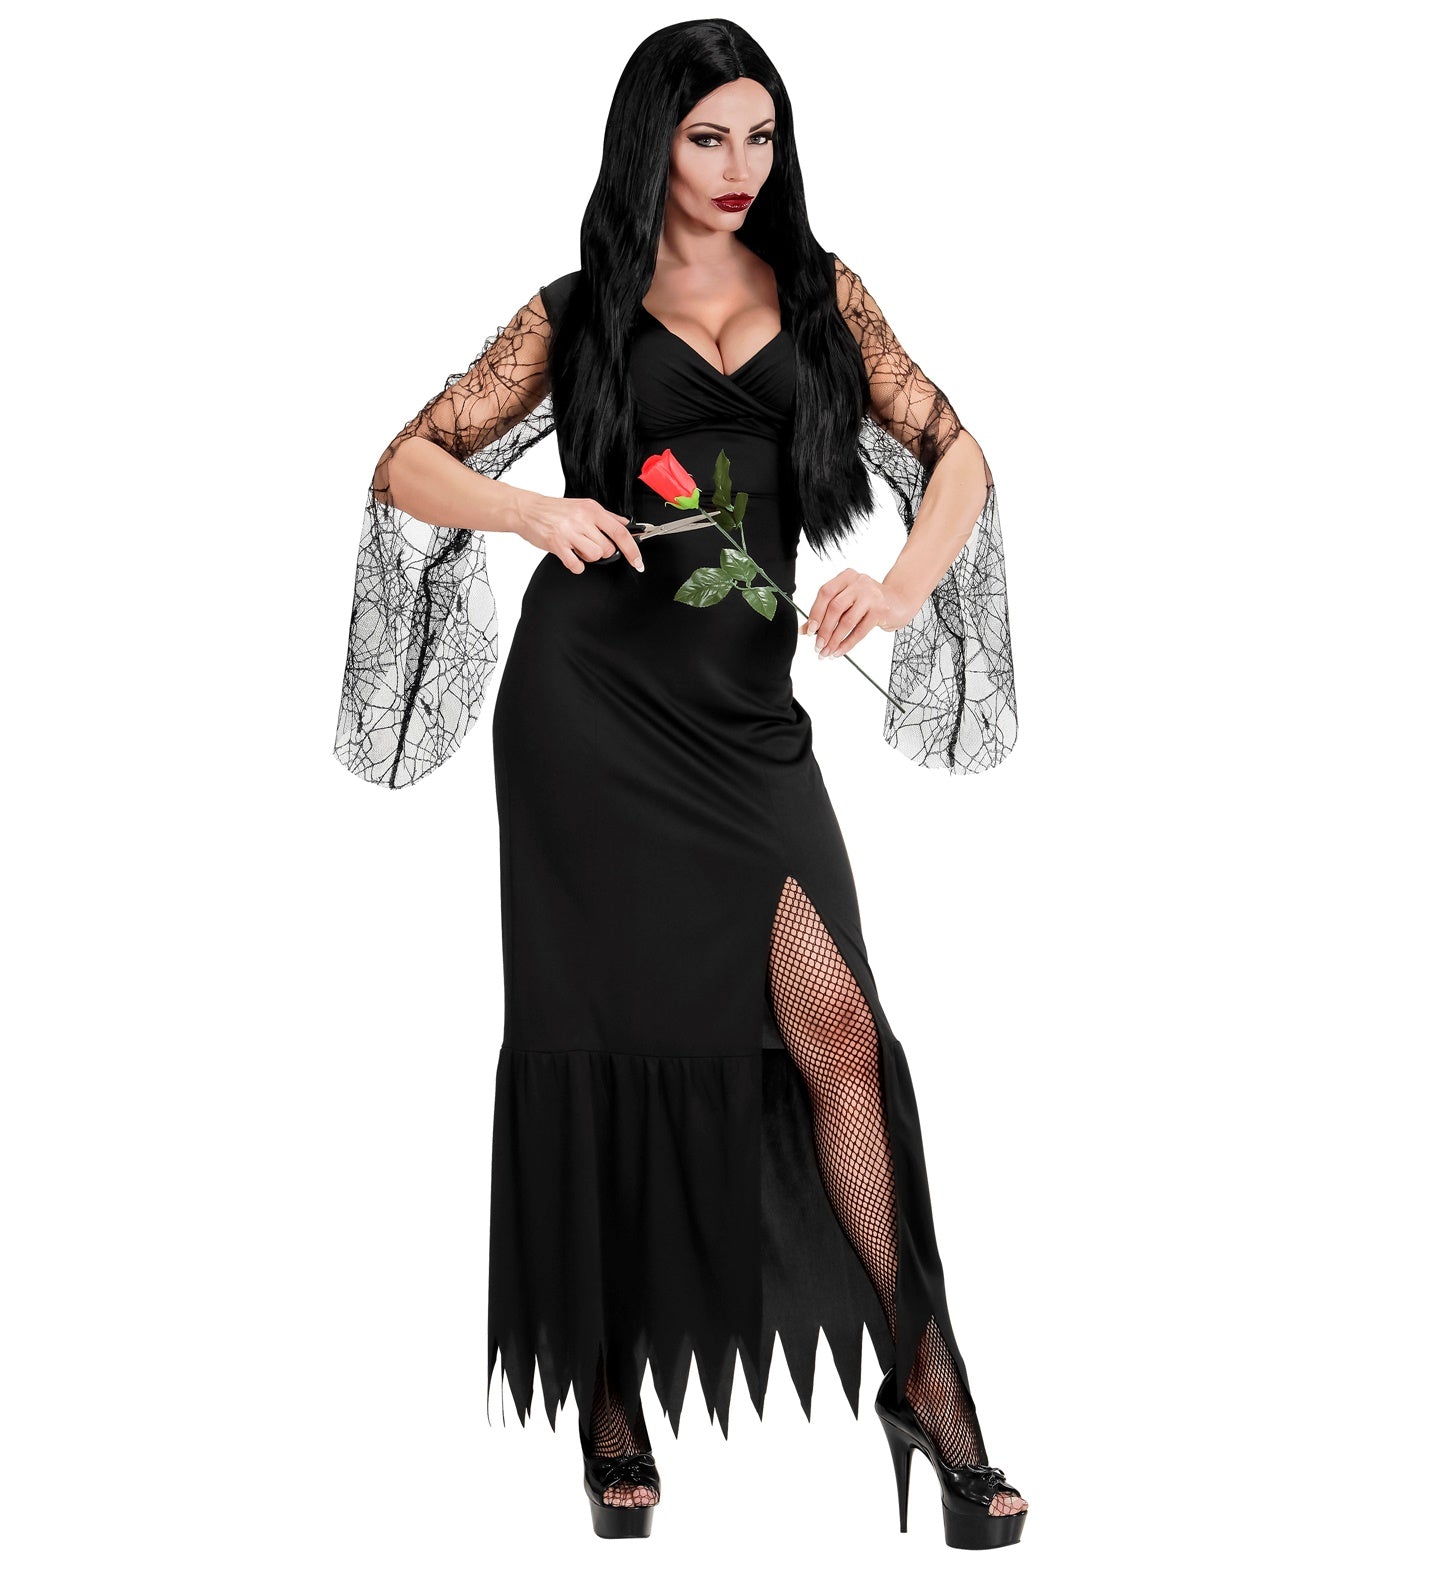 Dark Lady Morticia Costume